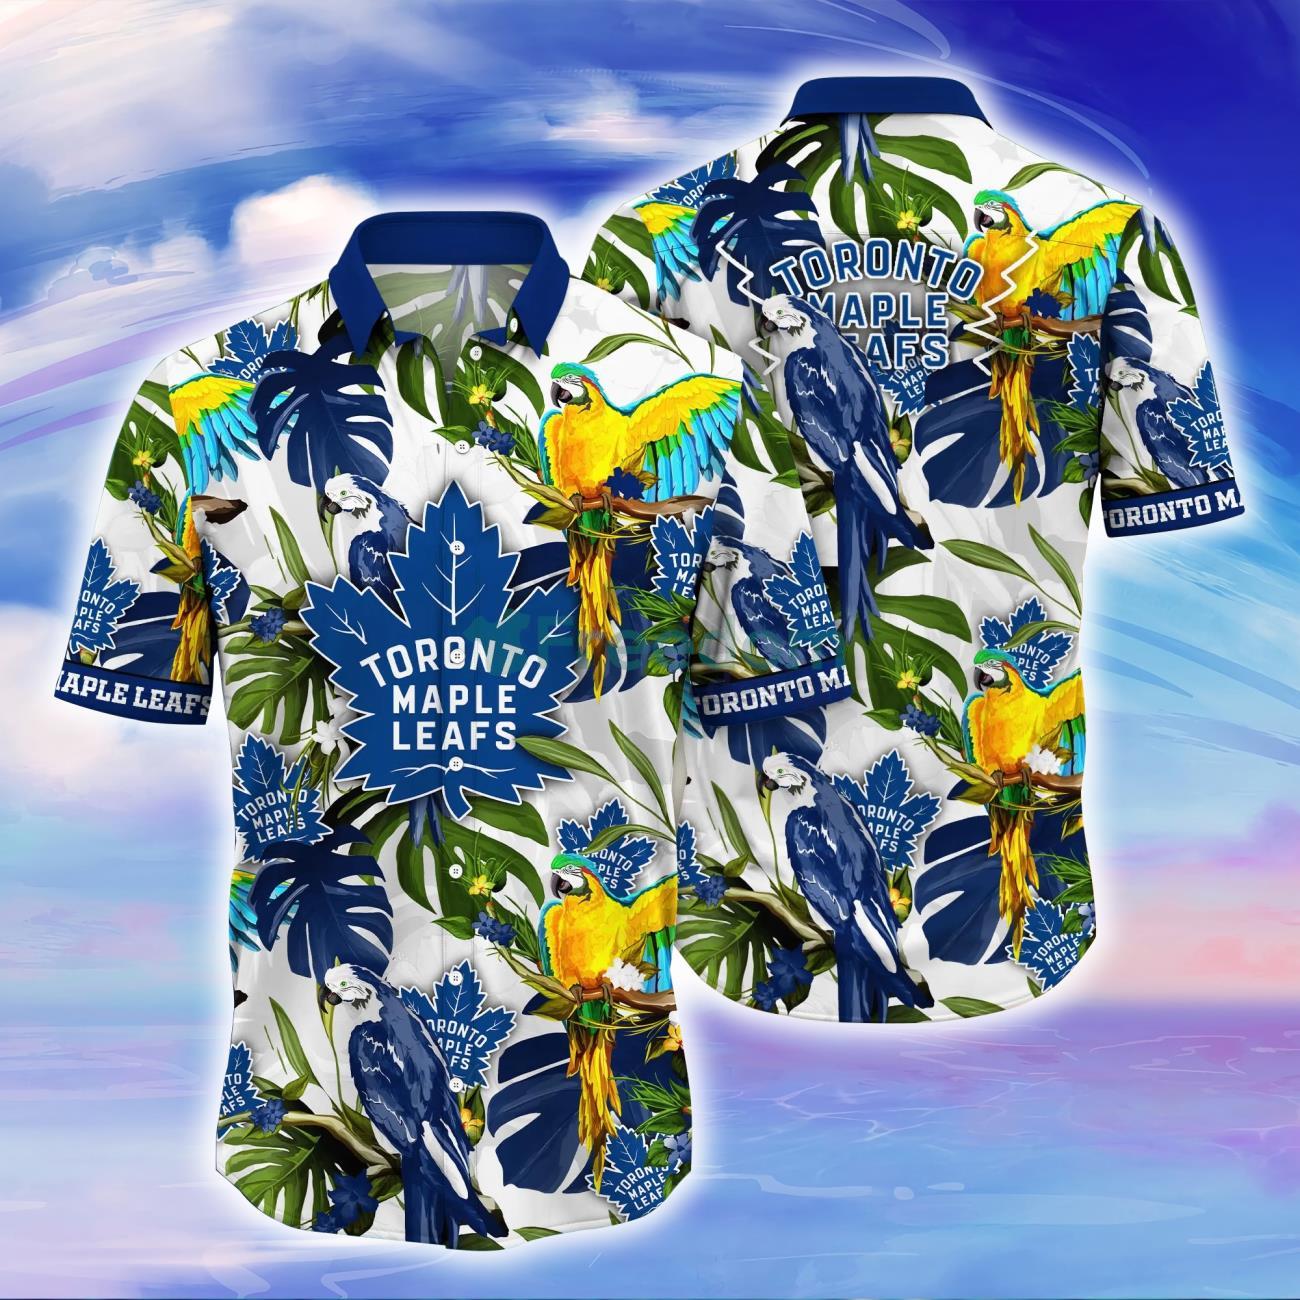 Chicago Blackhawks NHL Flower Hawaiian Shirt Impressive Gift For Fans